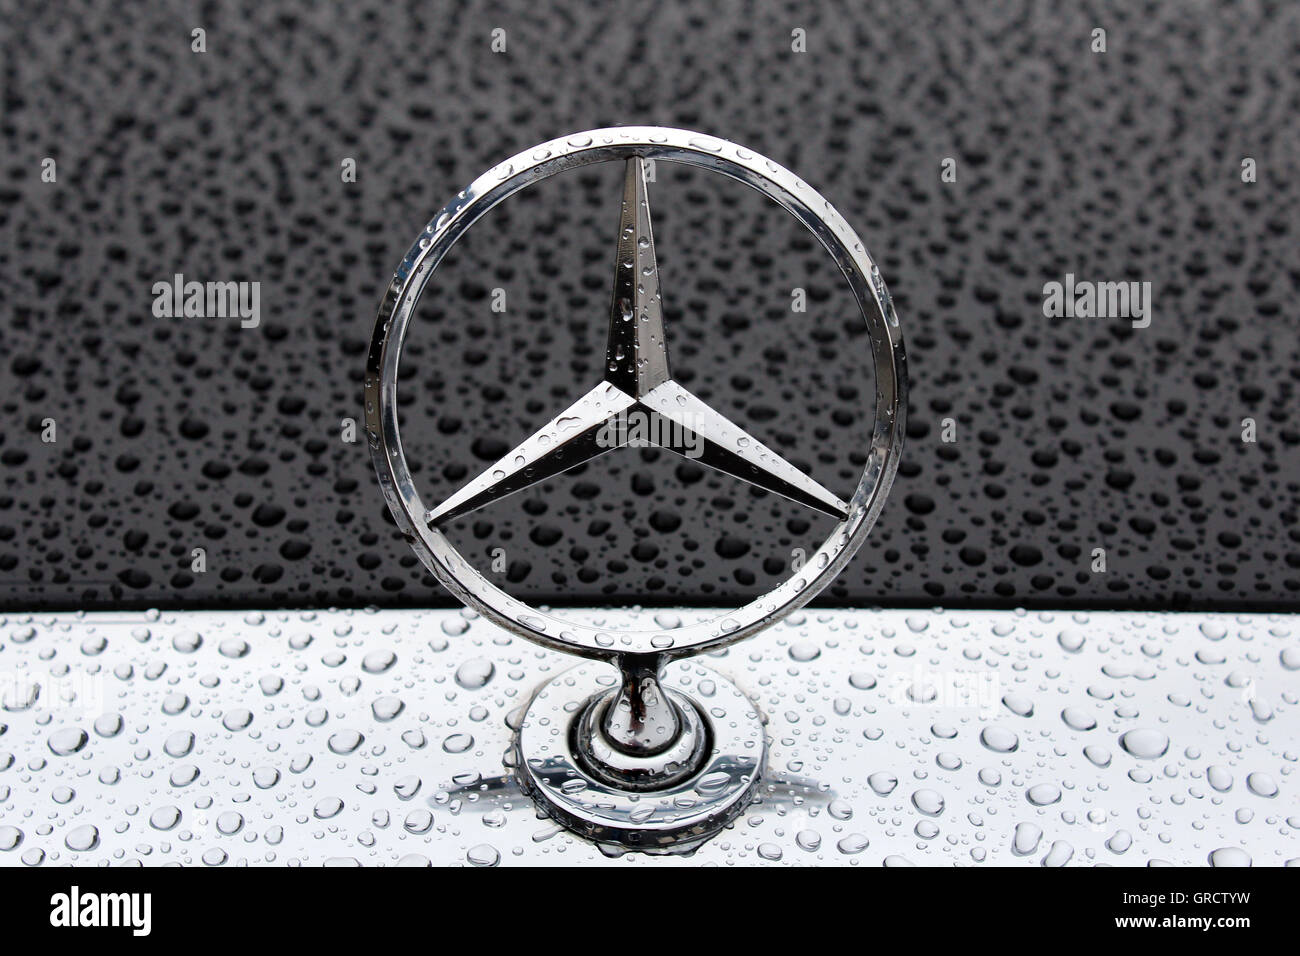 Mercedes Benz Star On Rainy Hood Stock Photo